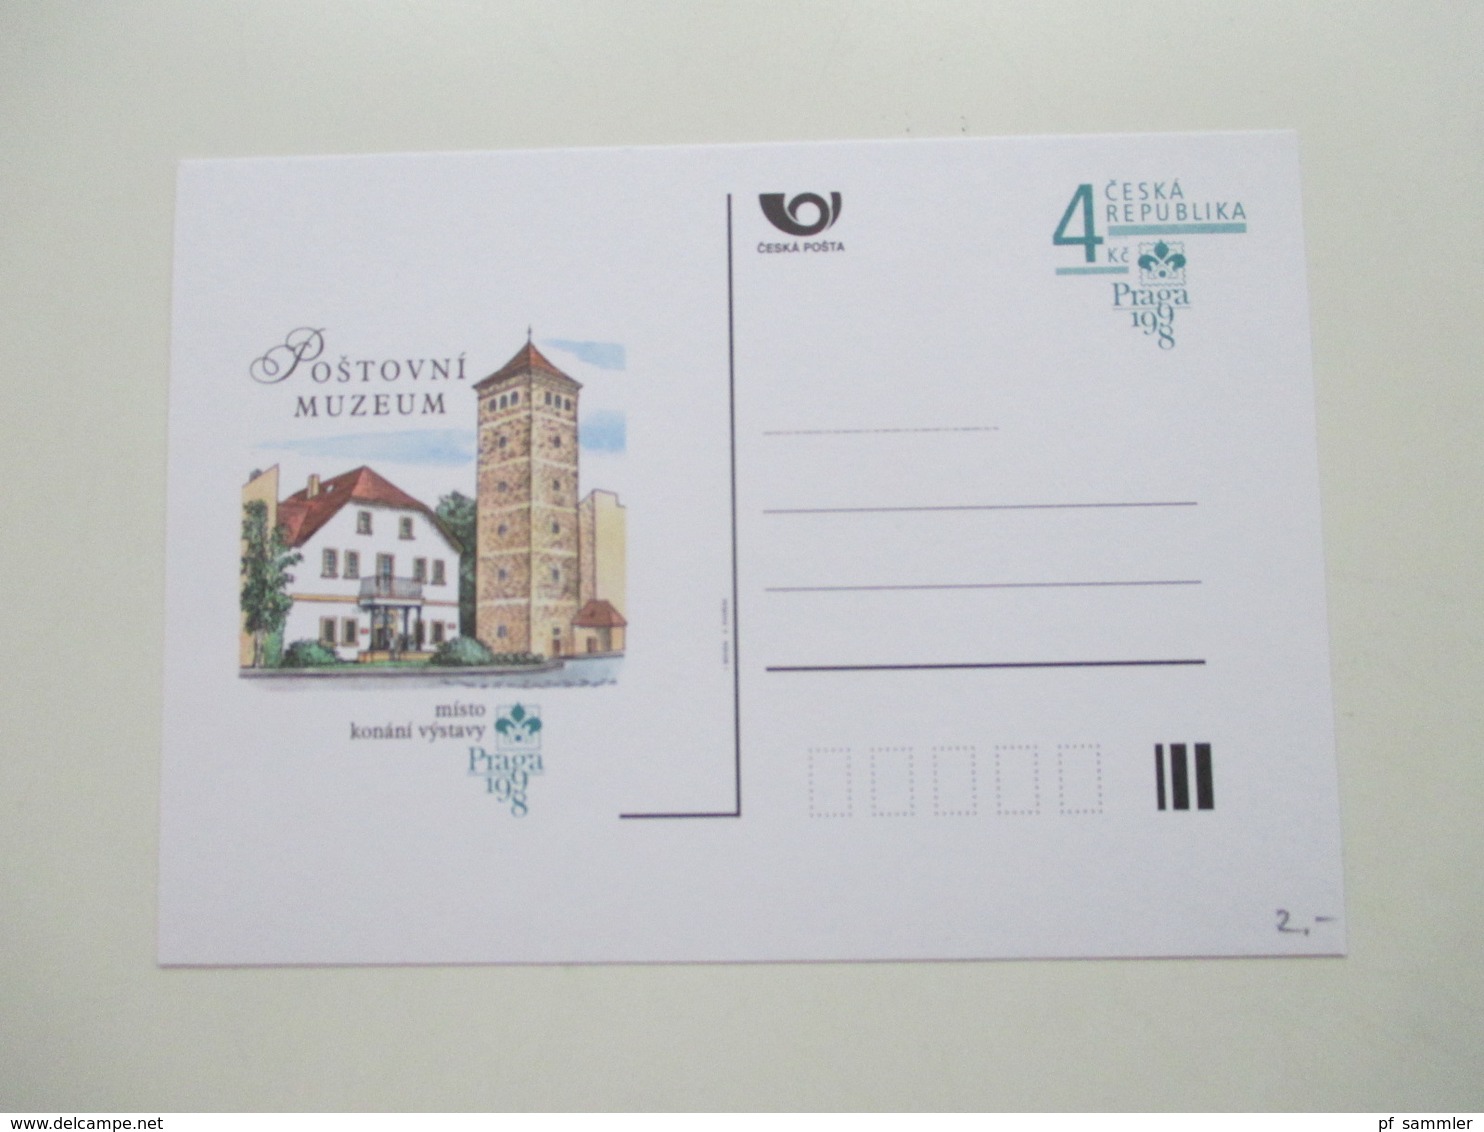 Tschechische Republik Posten GA Karten / BM Ausstellungen / Postfila 1990er Jahre - 2001 insgesamt 200 Stück ungebraucht